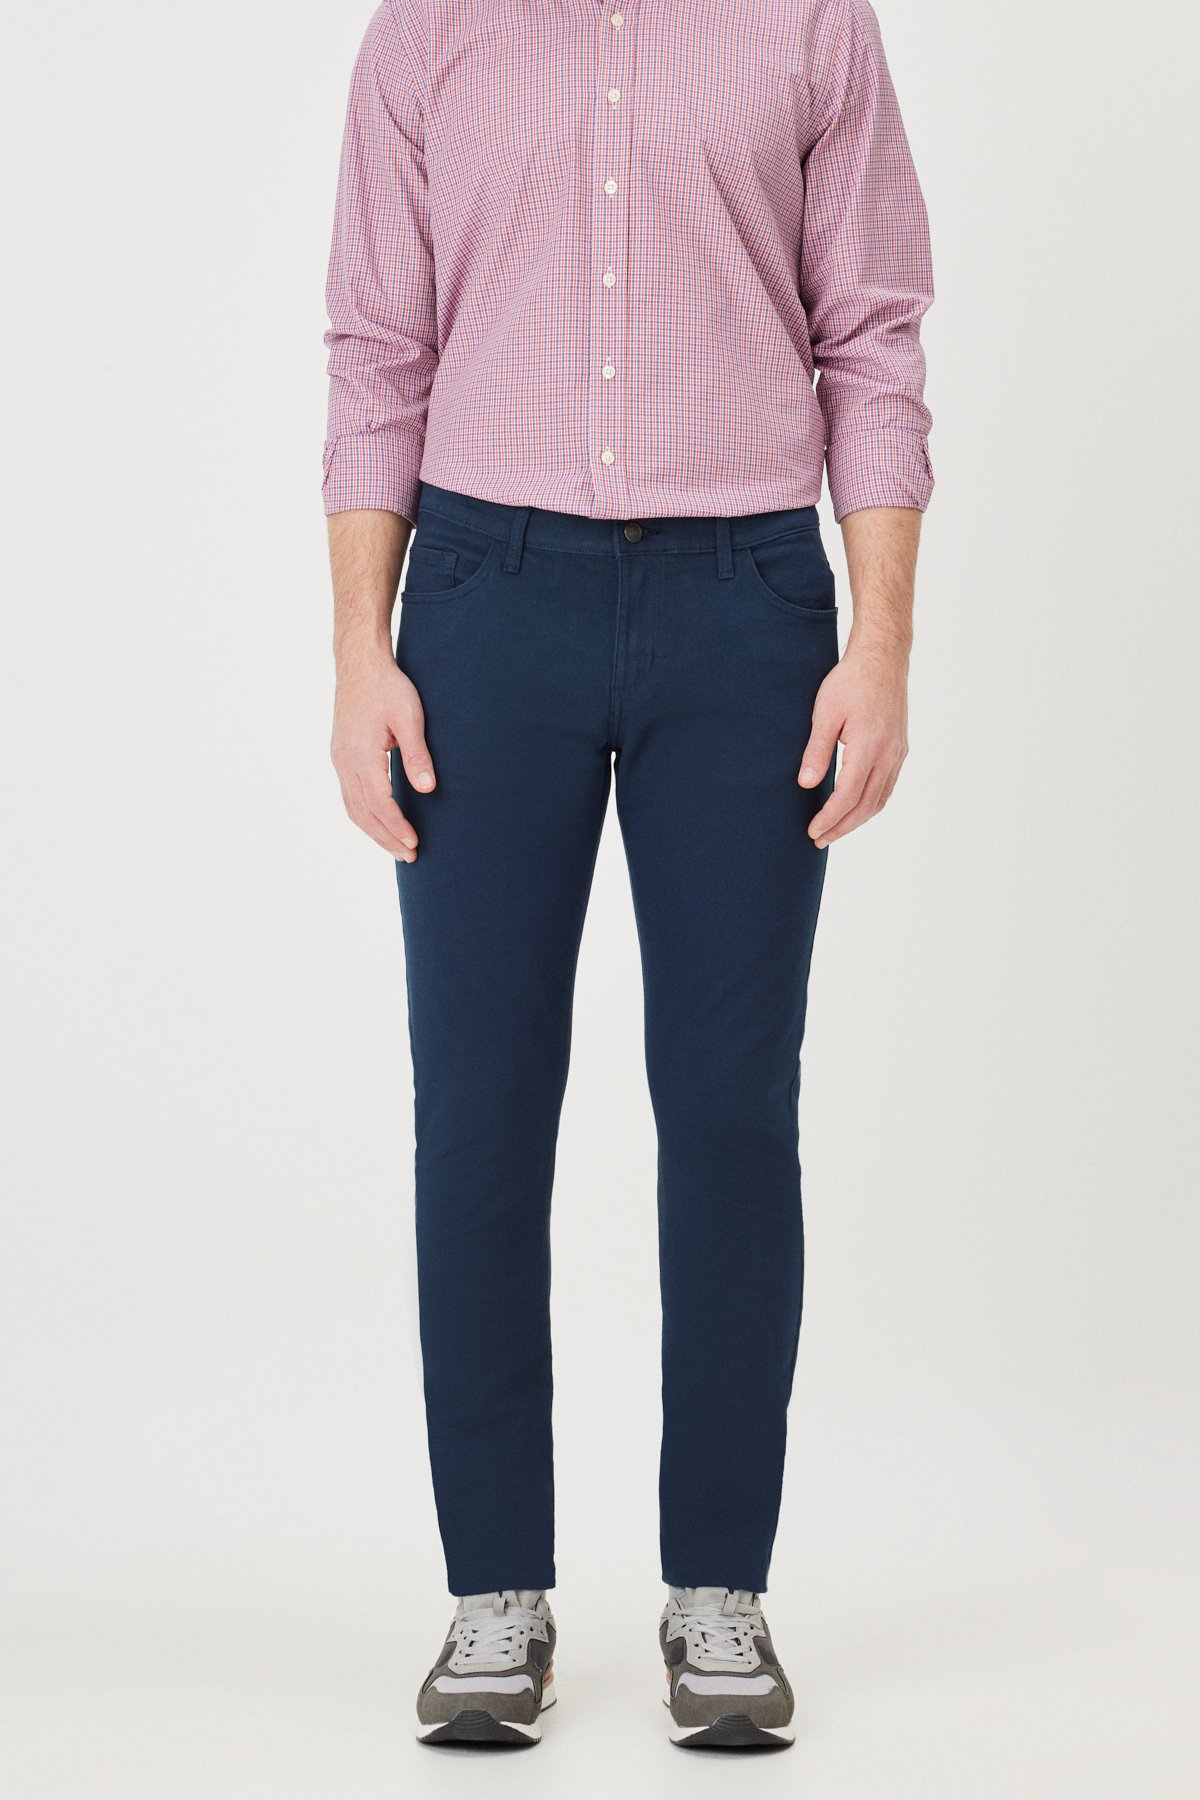 AC&Co / Altınyıldız Classics Men's Navy Blue Slim Fit Slim Fit 5 Pocket Cotton Canvas Flexible Chino Trousers